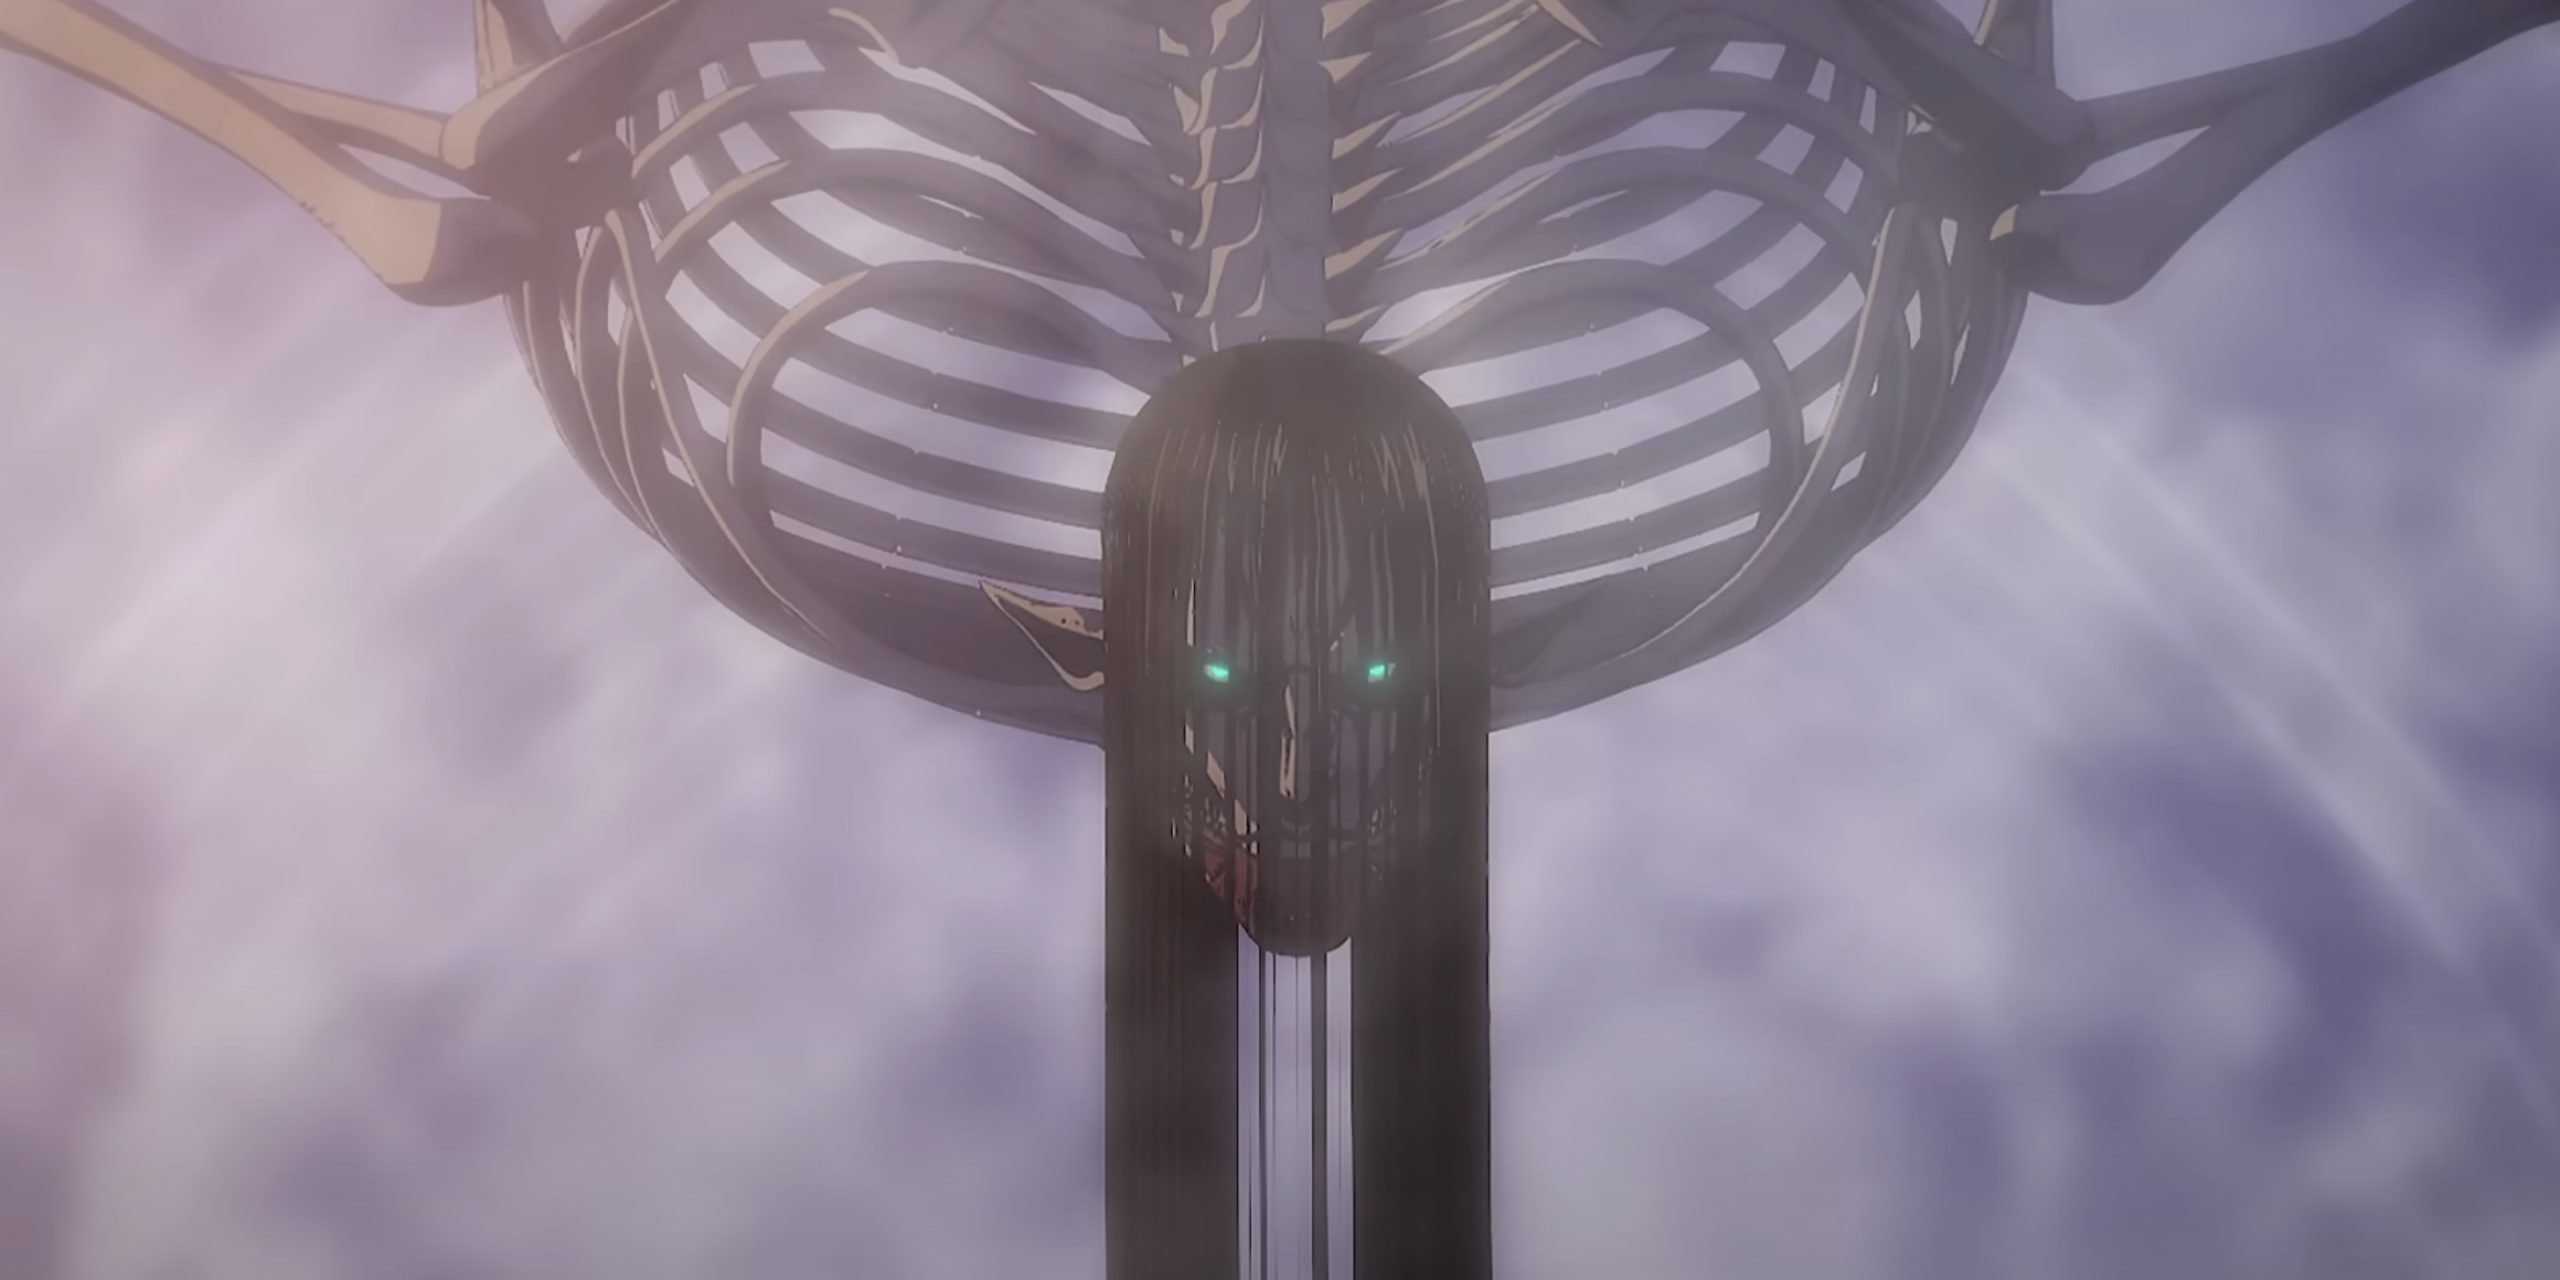 How Did Eren End The Titan Curse?